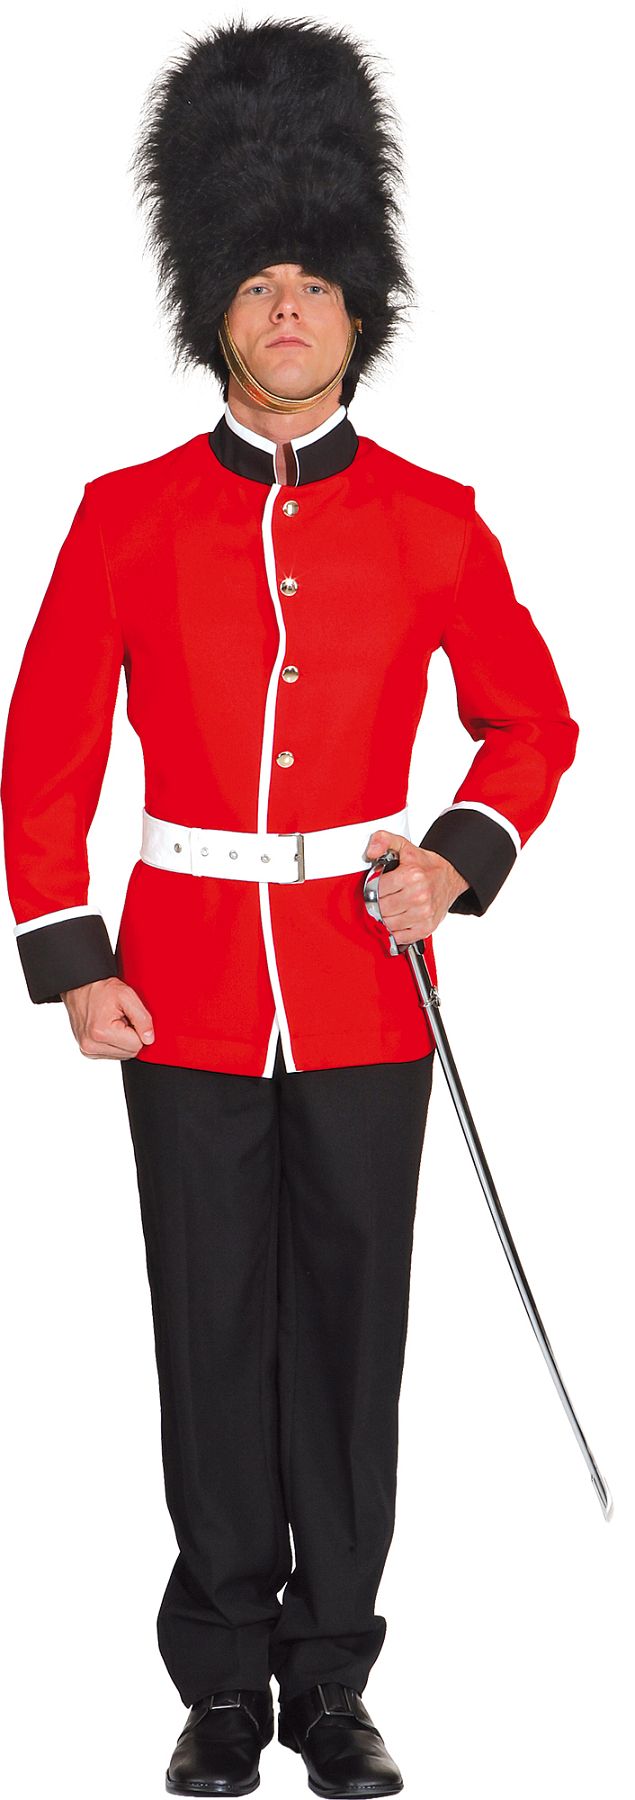 Kostüm Soldat königliche Garde, rot-schwarz